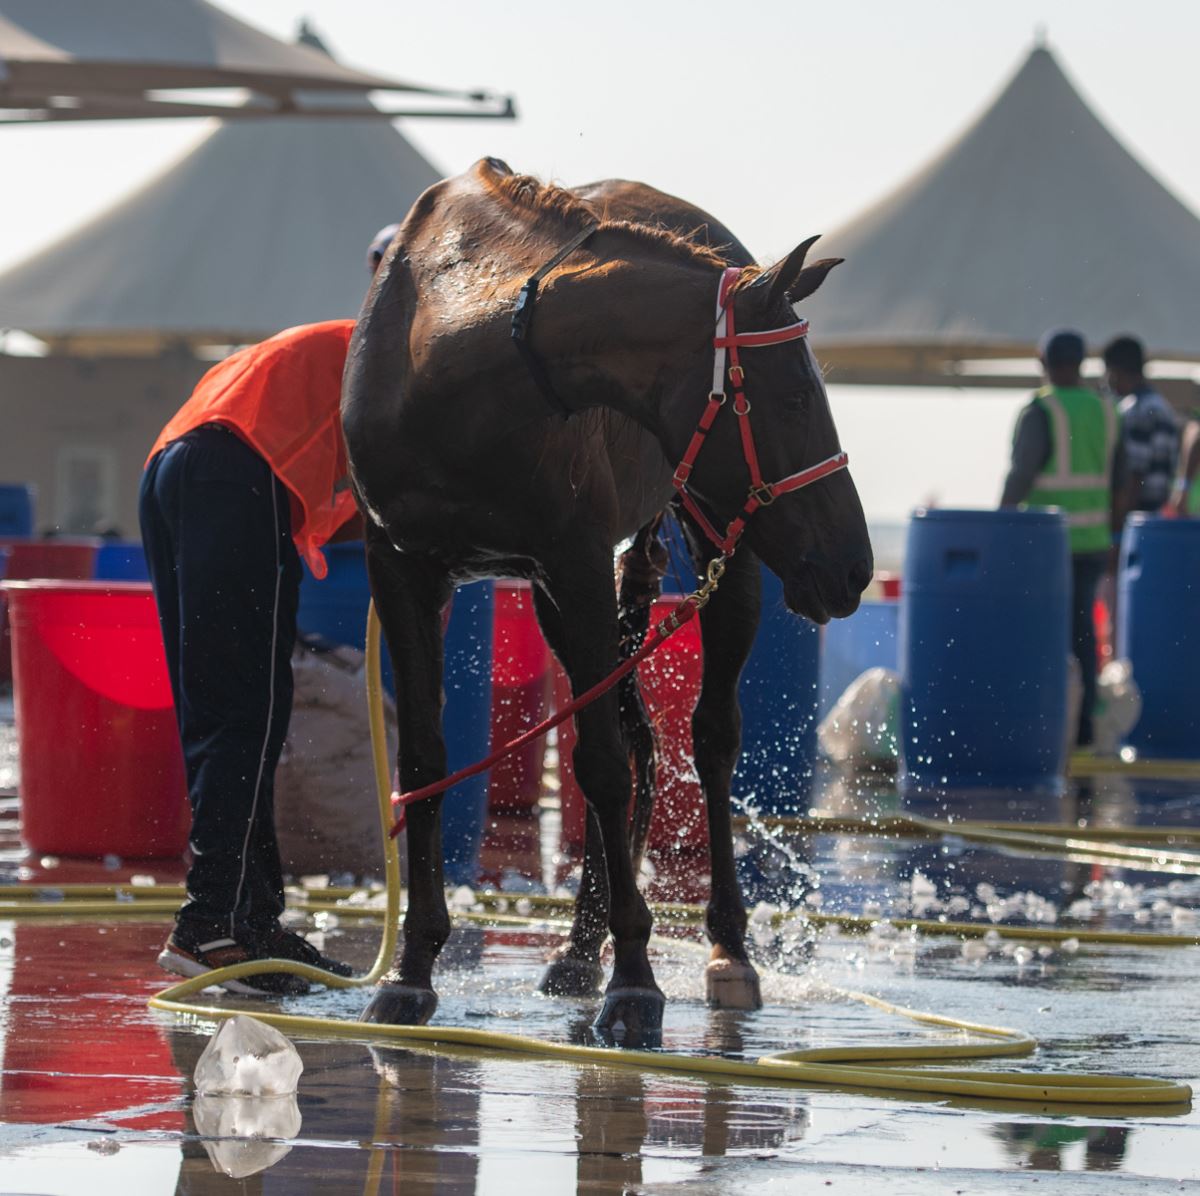 15 صورة تبرز جمال الخيول في سباقات البحرين - الكنوز المصرية